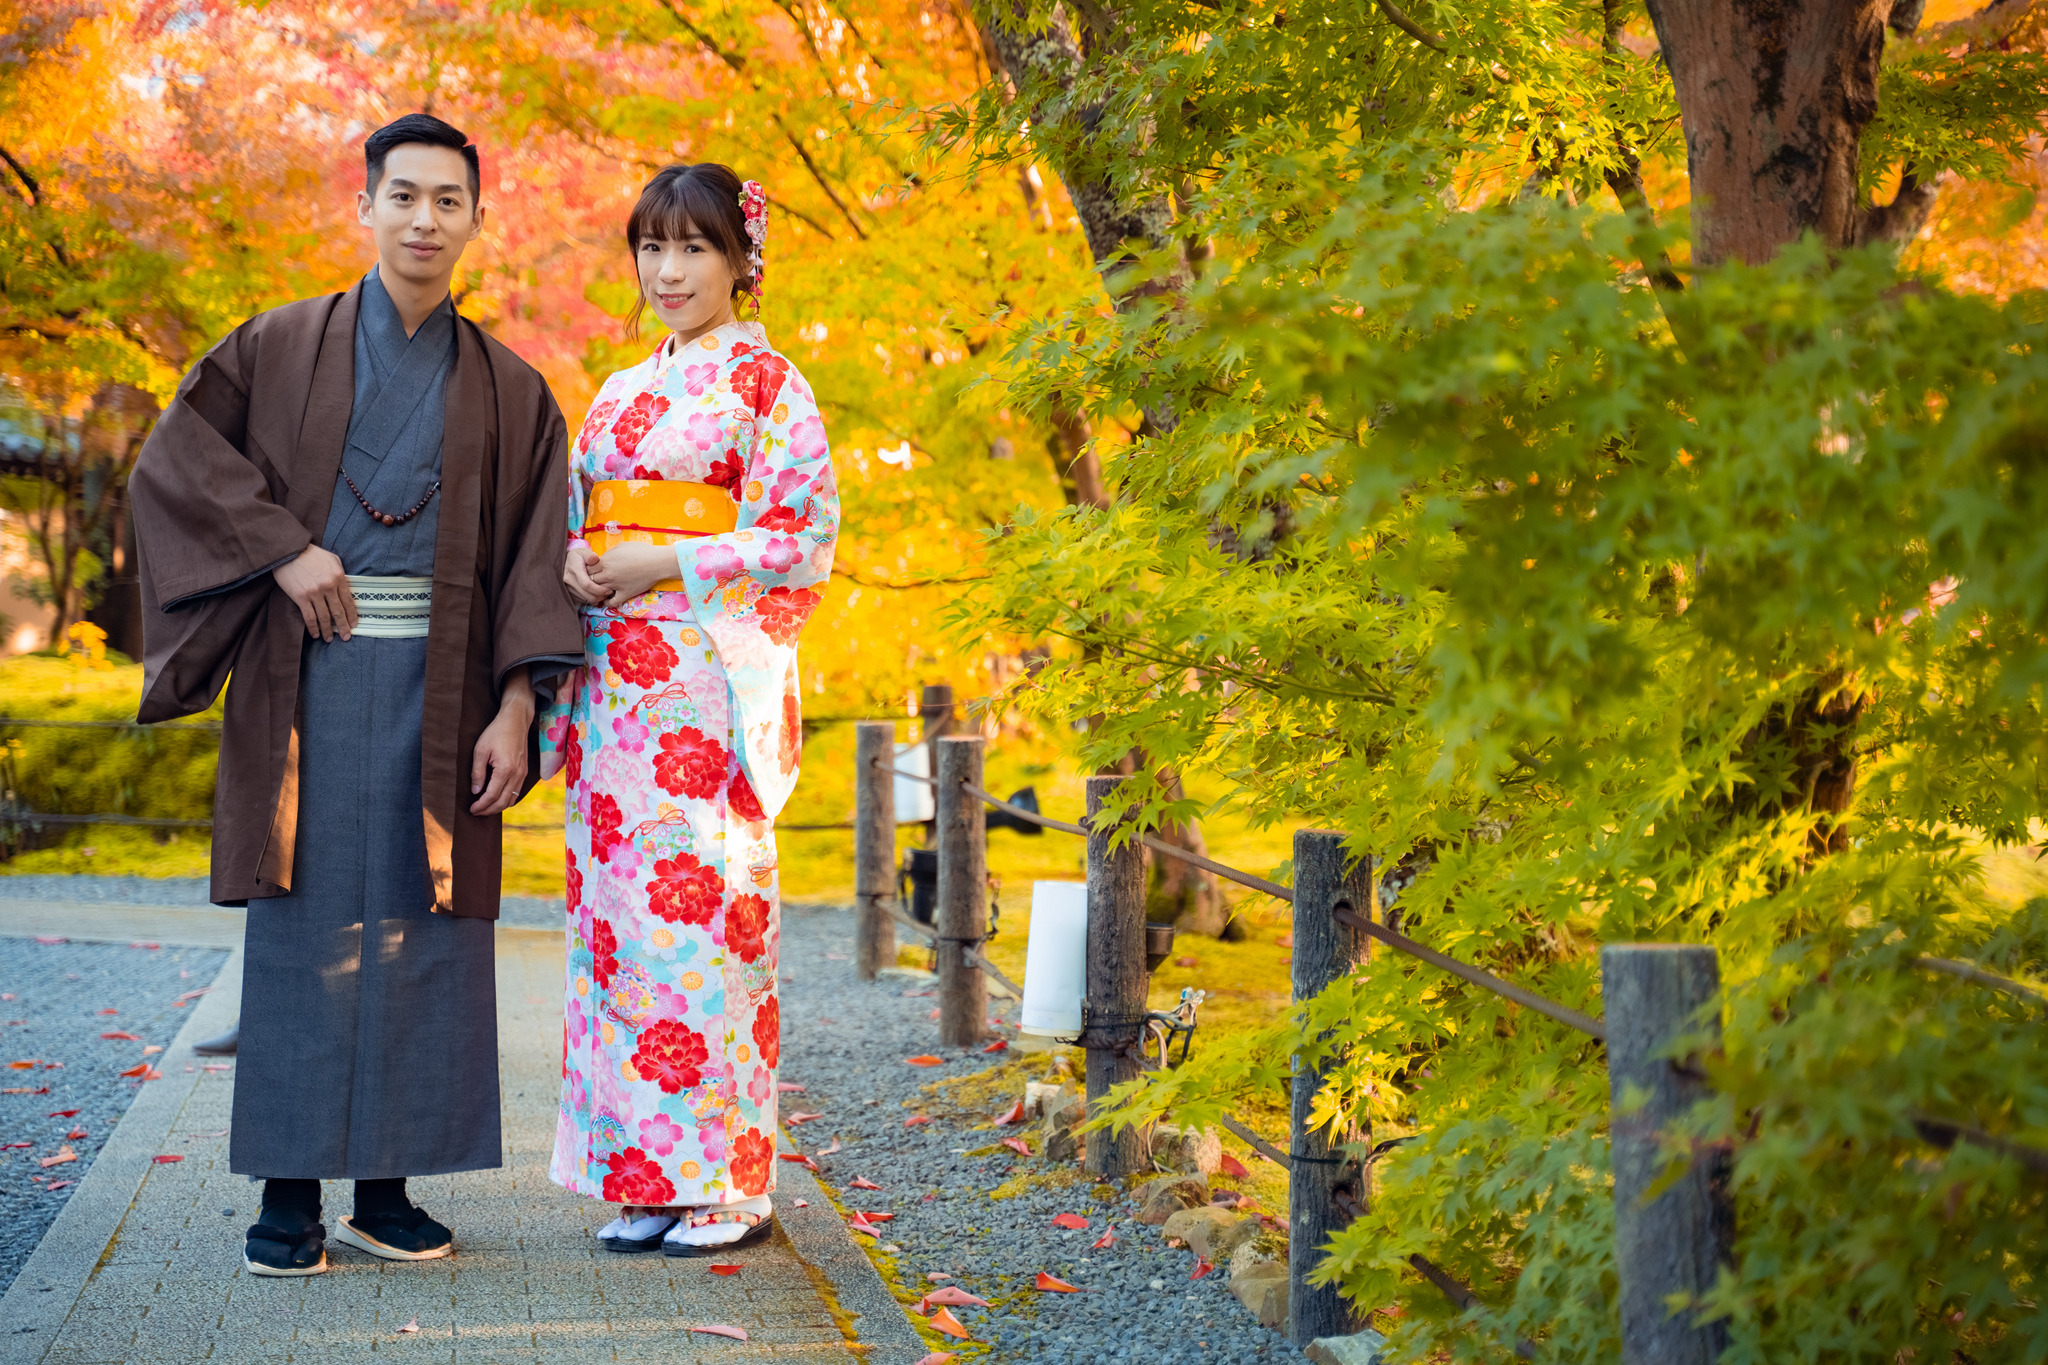 京都楓葉婚紗 二年版 日本京都遊玩 瑪朵婚紗 日本婚紗推薦 楓葉和服婚紗 清水寺 鴨川 嵐山